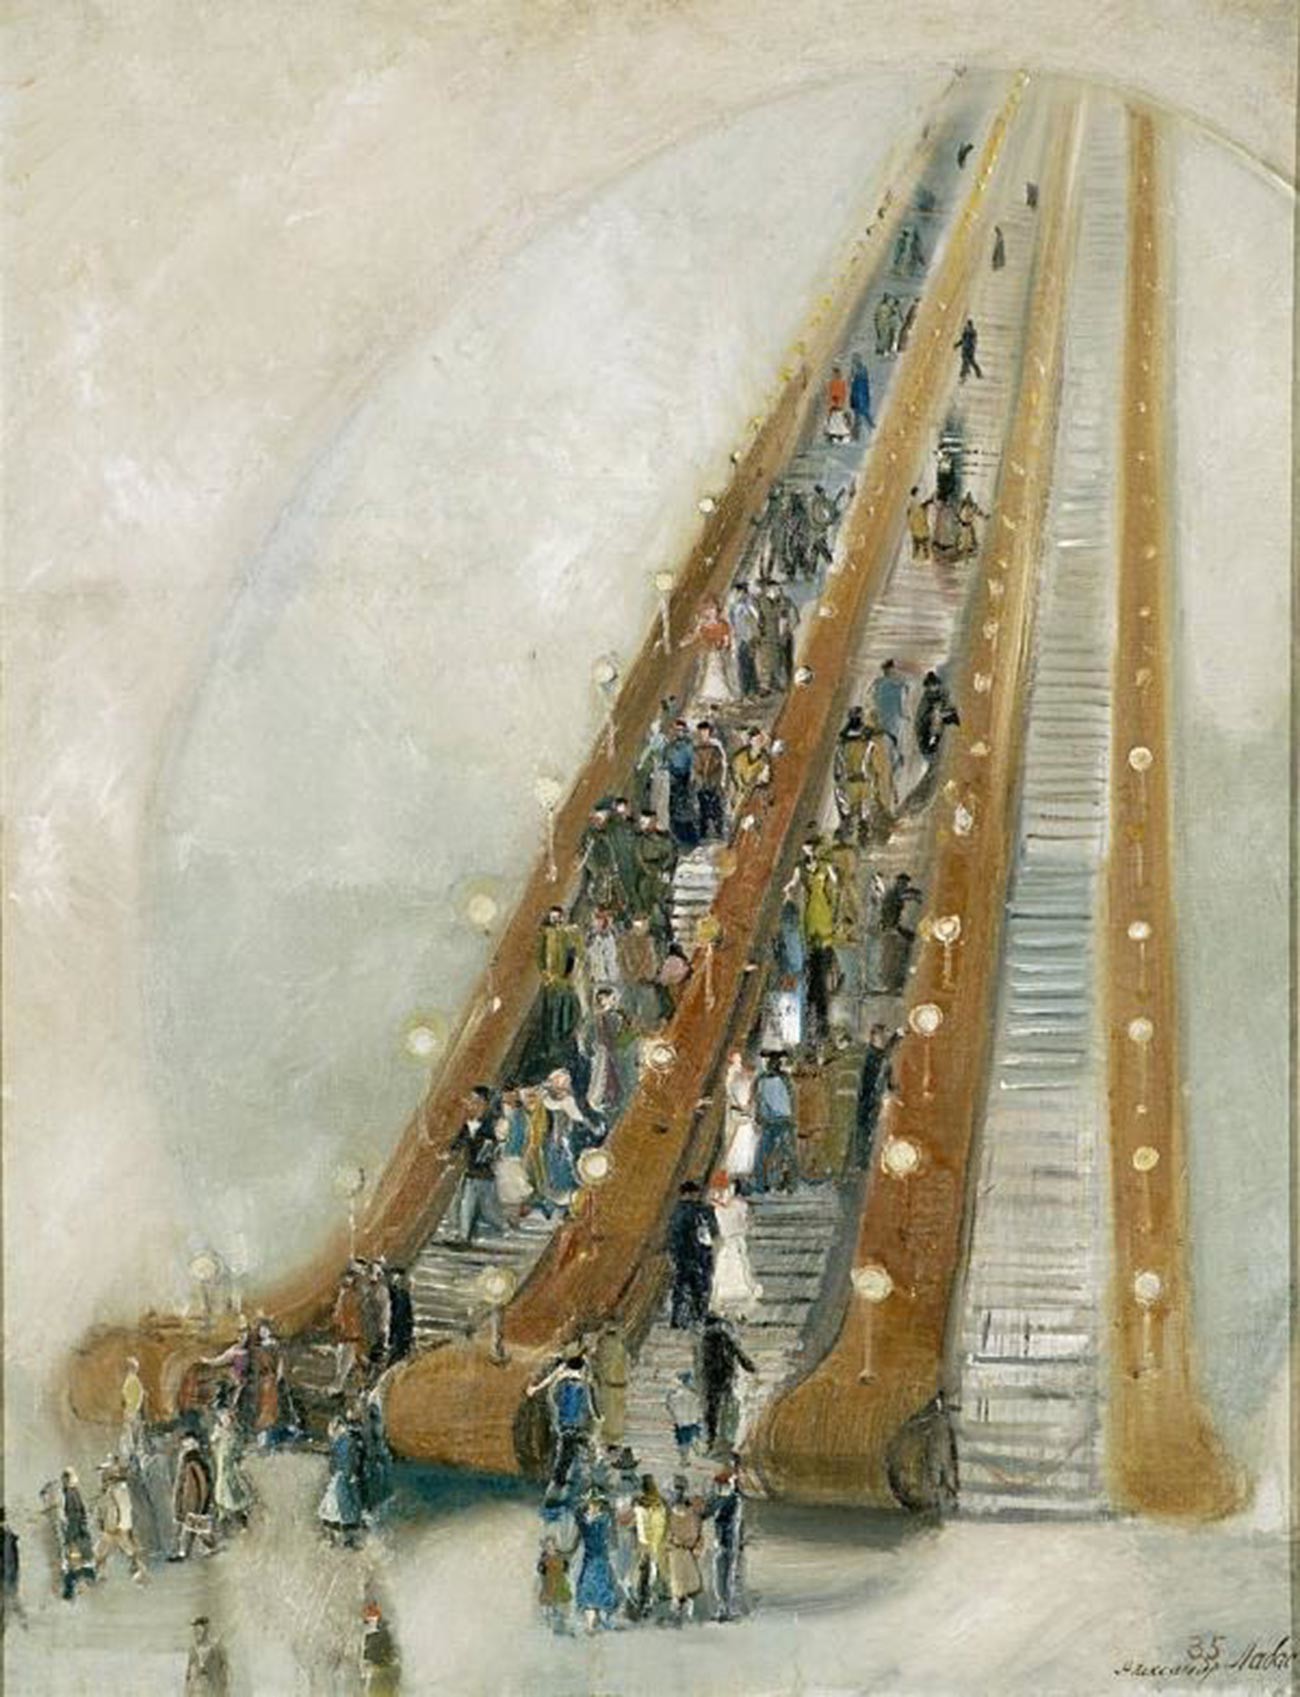 アレクサンドル・ラバス、「地下鉄の中で」、1935年